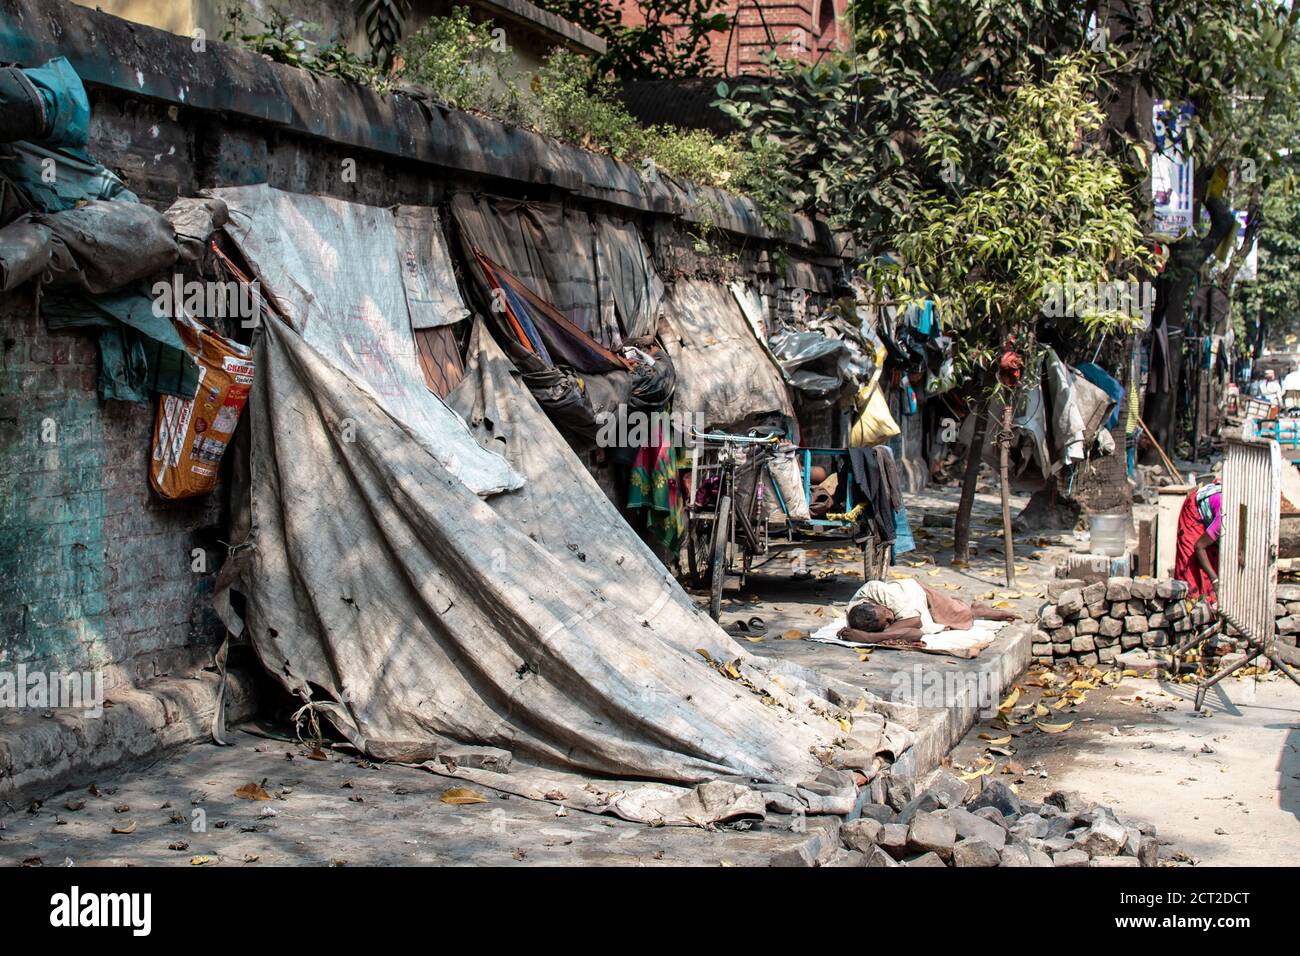 Kolkata, India - February 1, 2020: An unidentified man sleeps on the ground next to run down tarp shelter homes on February 1, 2020 in Kolkata, India Stock Photo